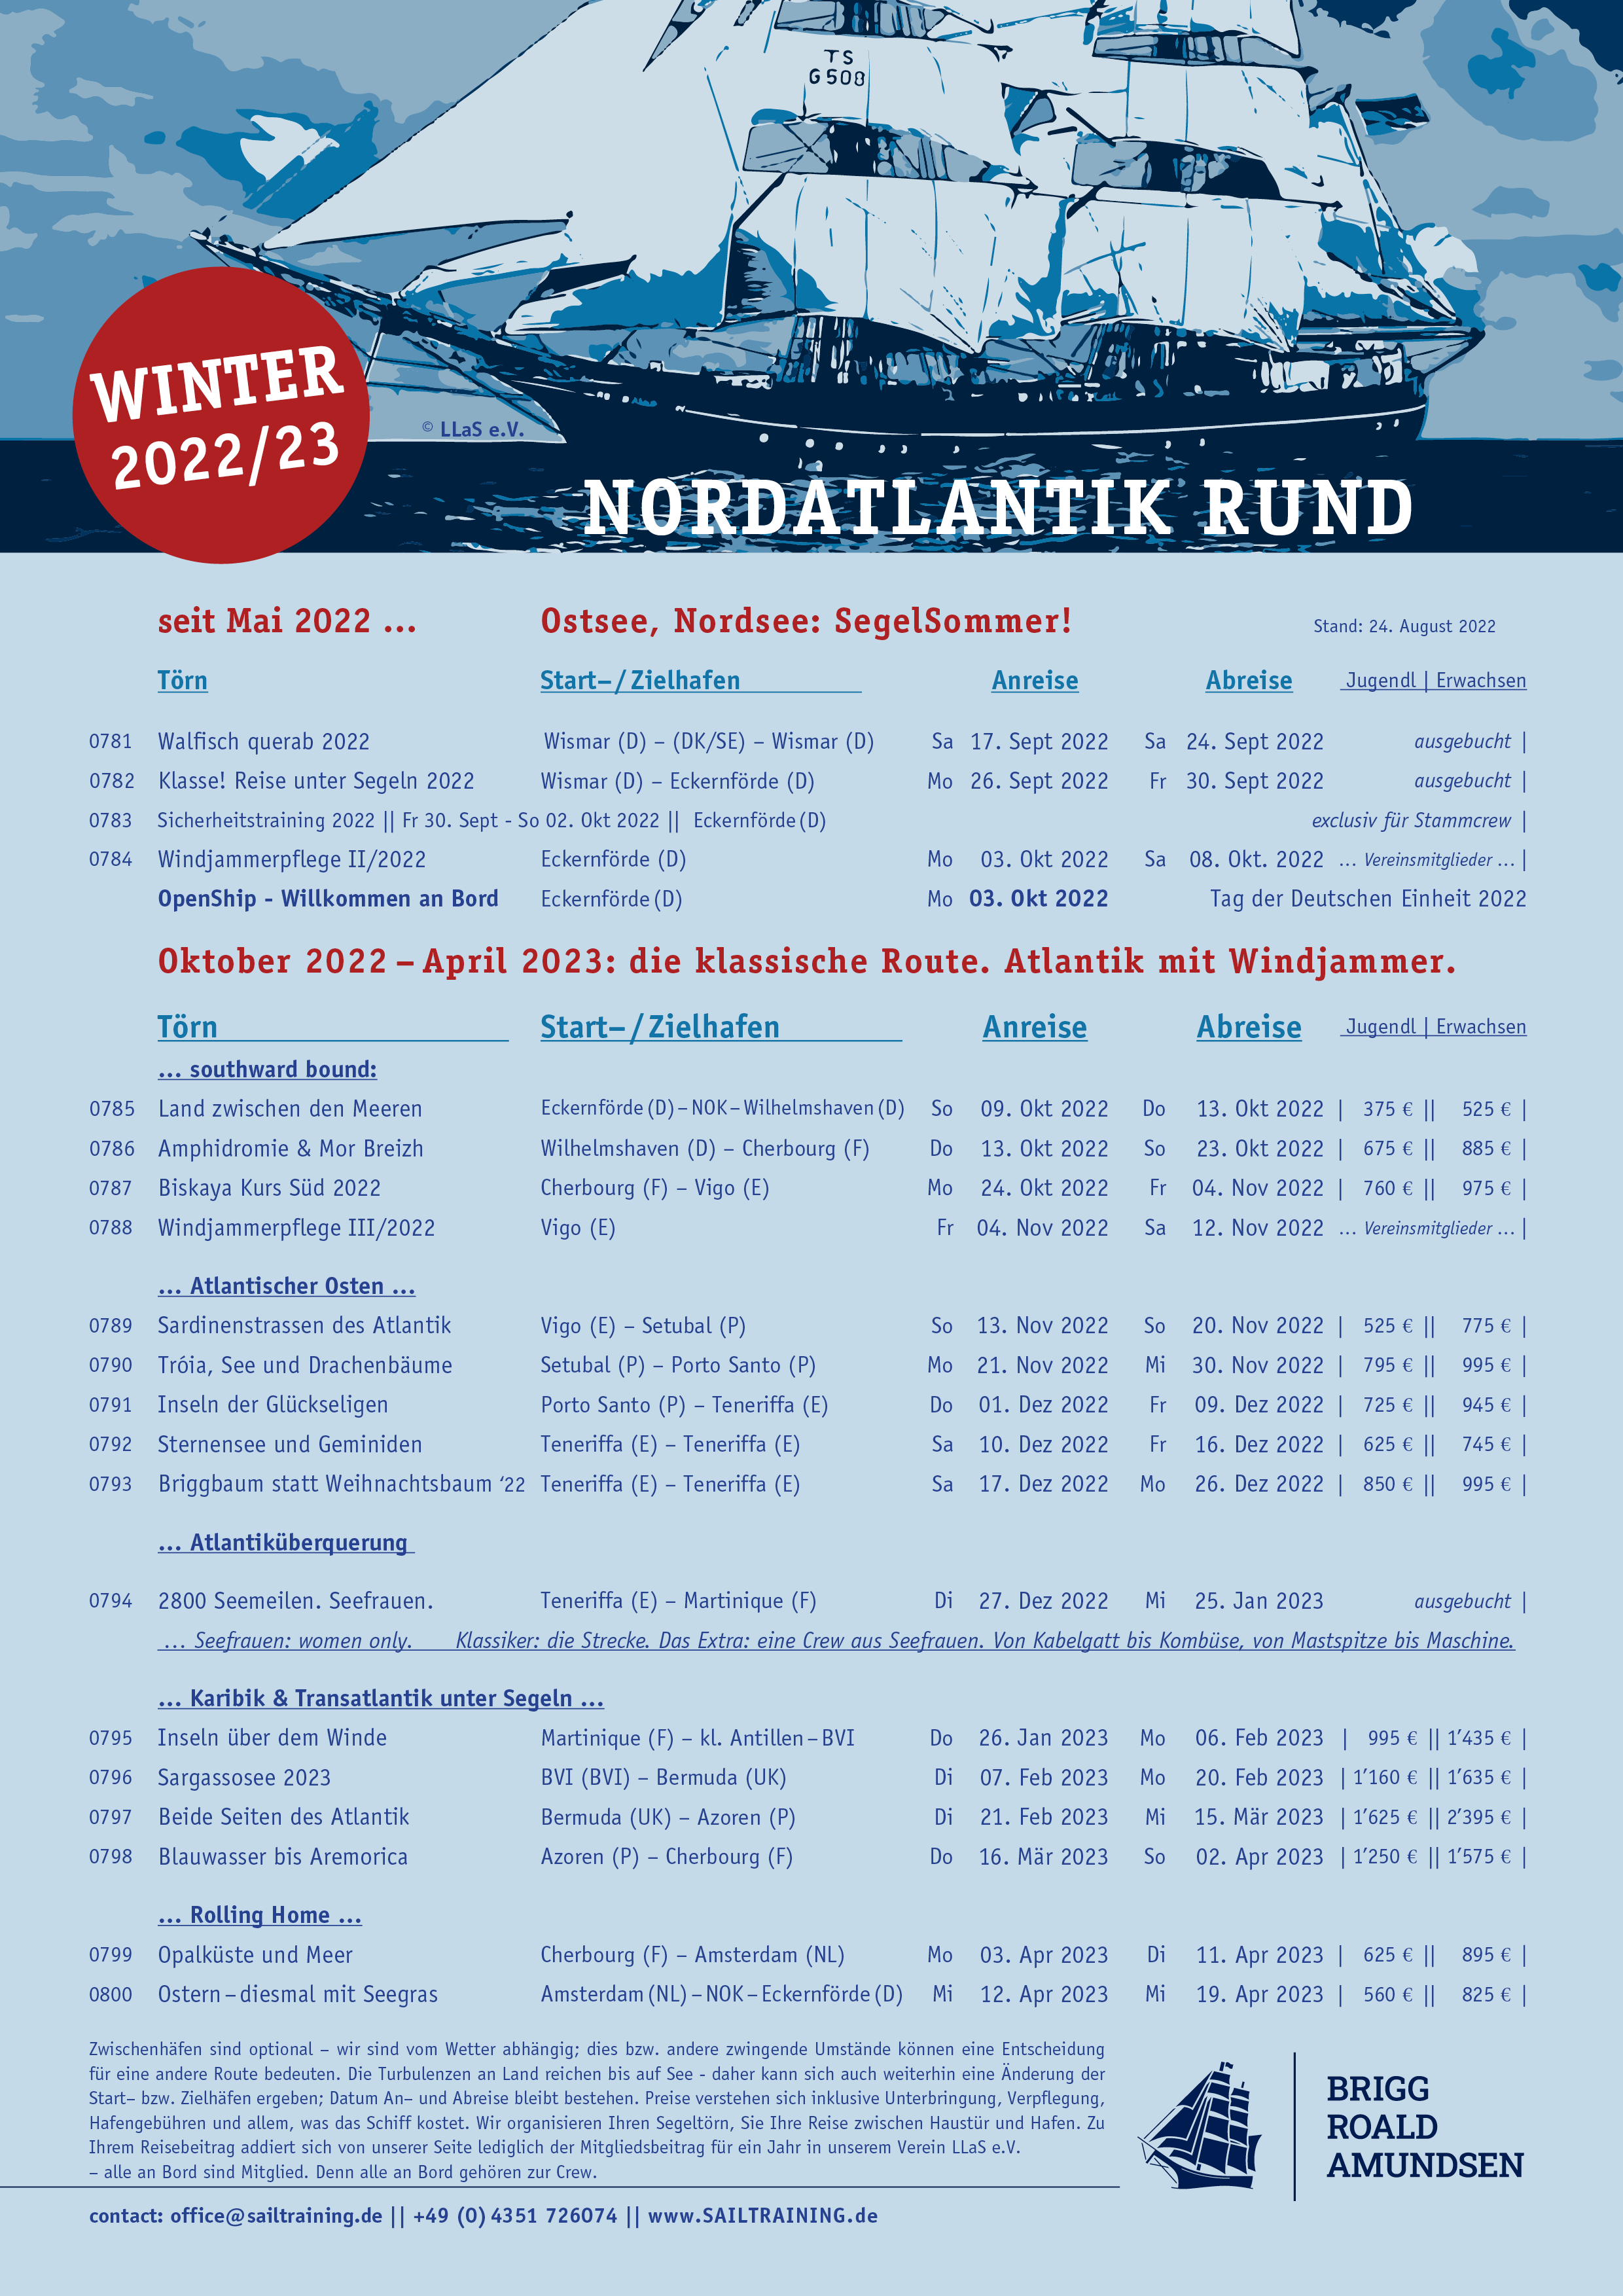 Törnplan|VoyageSchedule | Brigg ROALD AMUDNSEN | Sommer 2022/2023